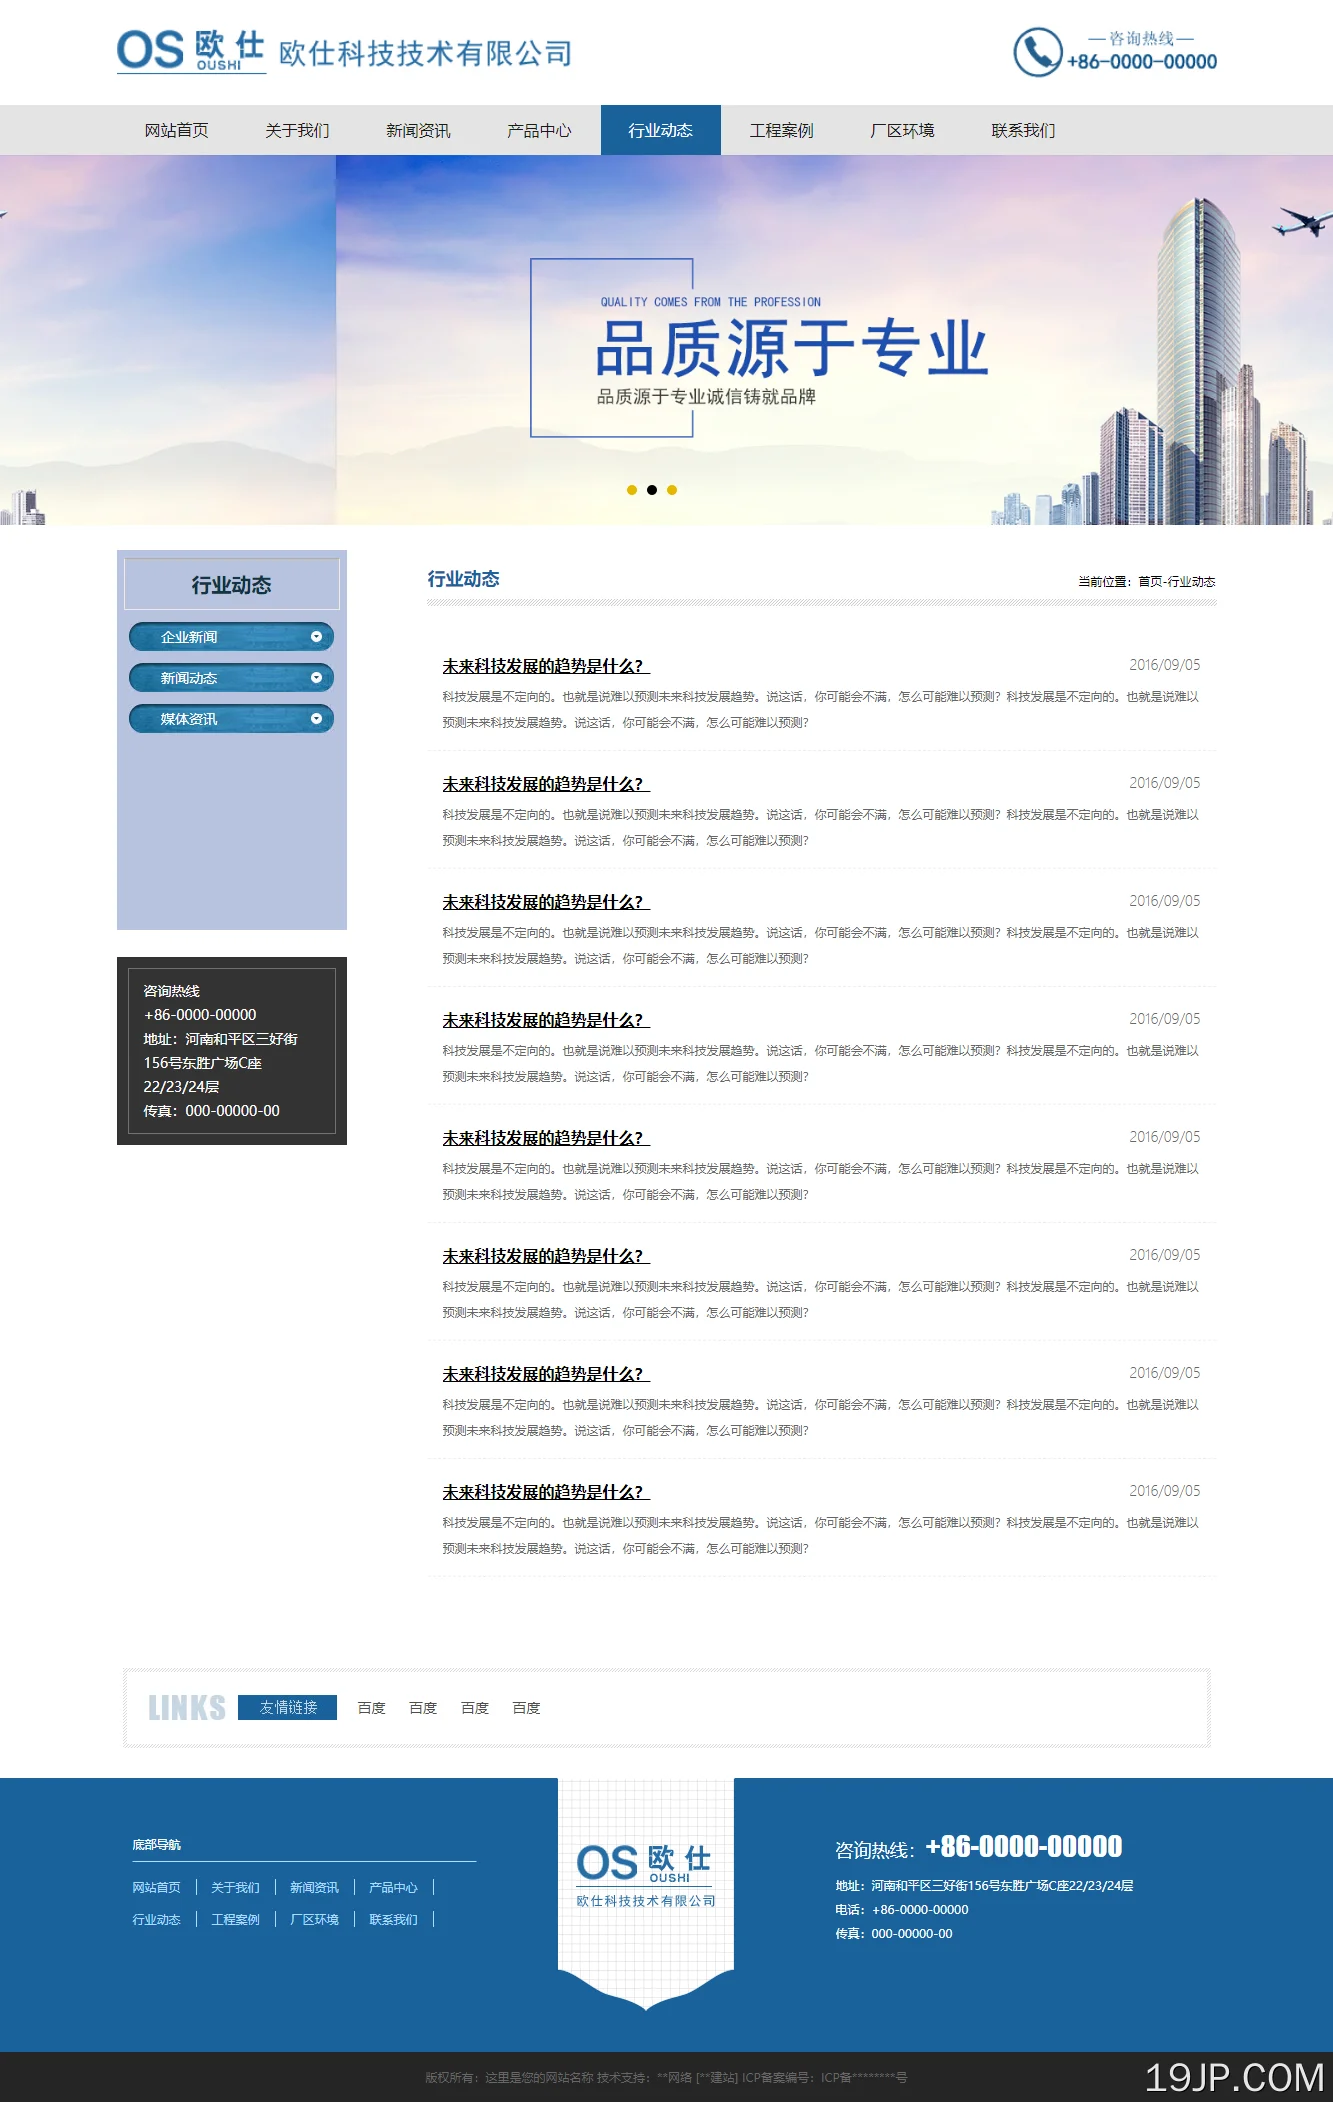 蓝色风格防腐木材建筑材料公司网站模板